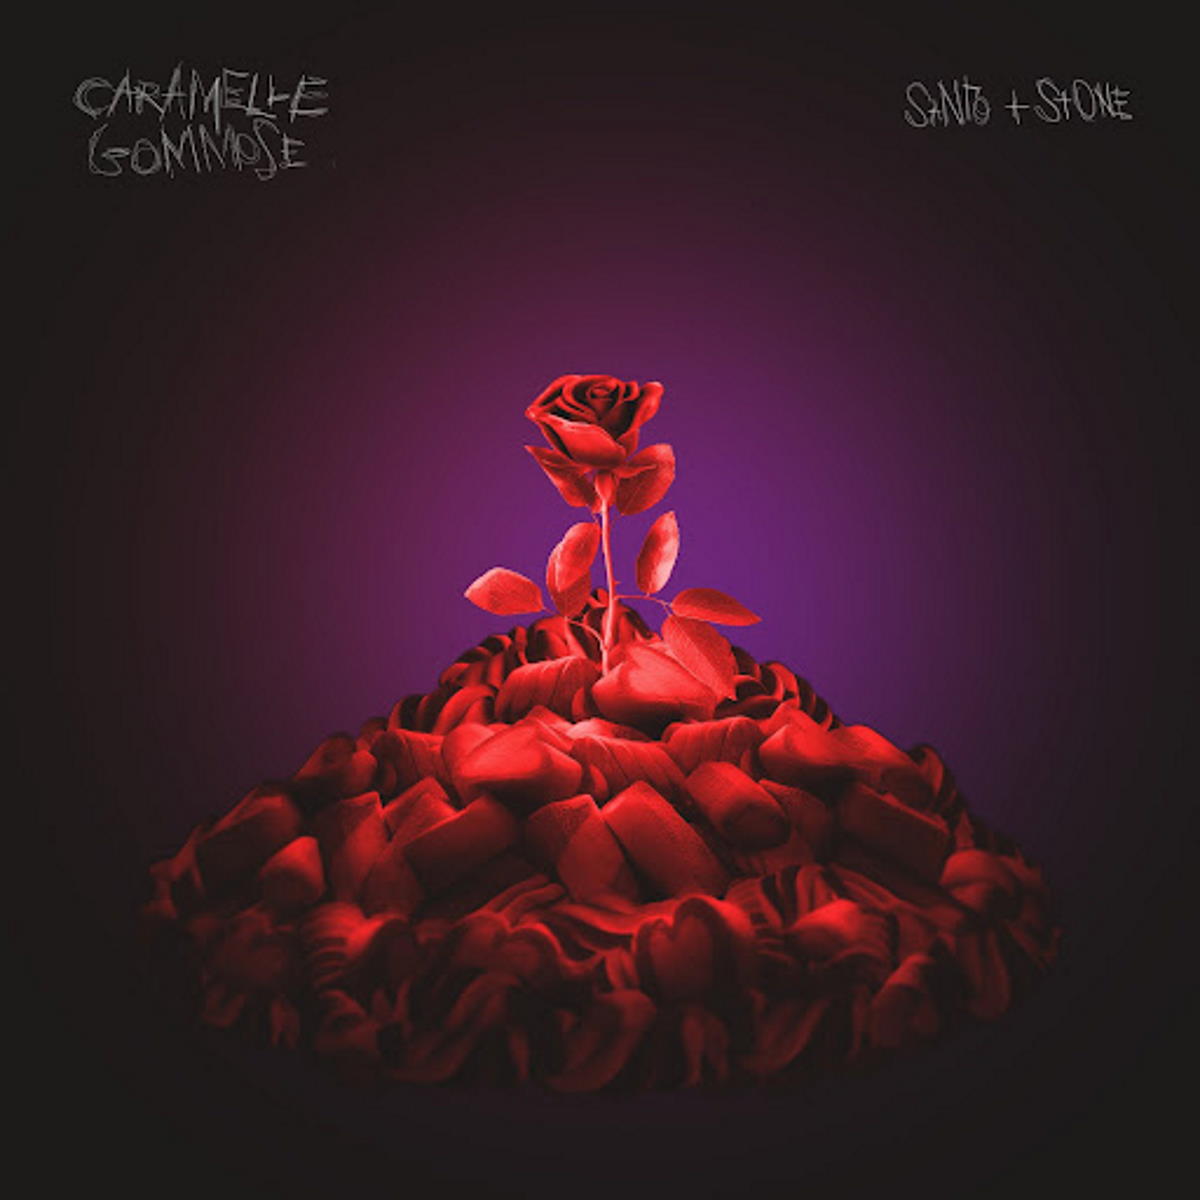 SANTO E STONE: Caramelle gommose è il secondo singolo dei due artisti torinesi che anticipa l'album d'esordio in uscita il 21 gennaio